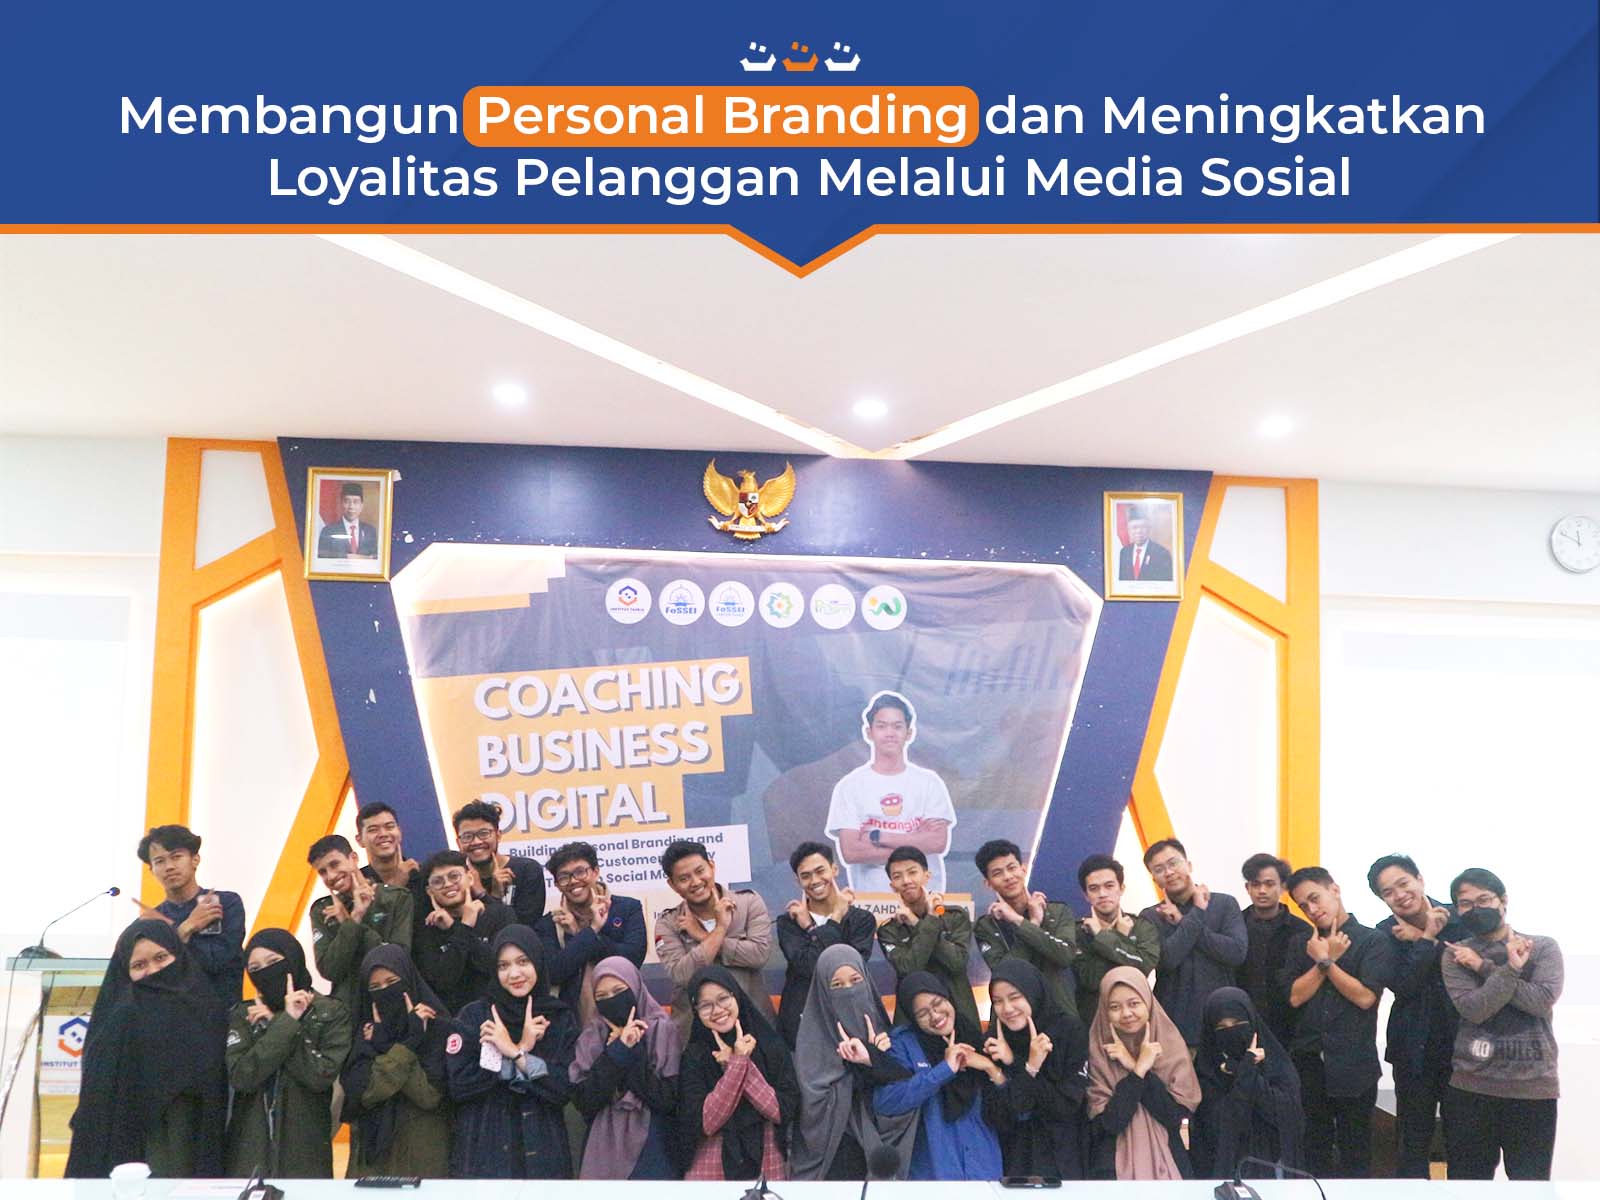 Membangun Personal Branding dan Meningkatkan Loyalitas Pelanggan Melalui Media Sosial